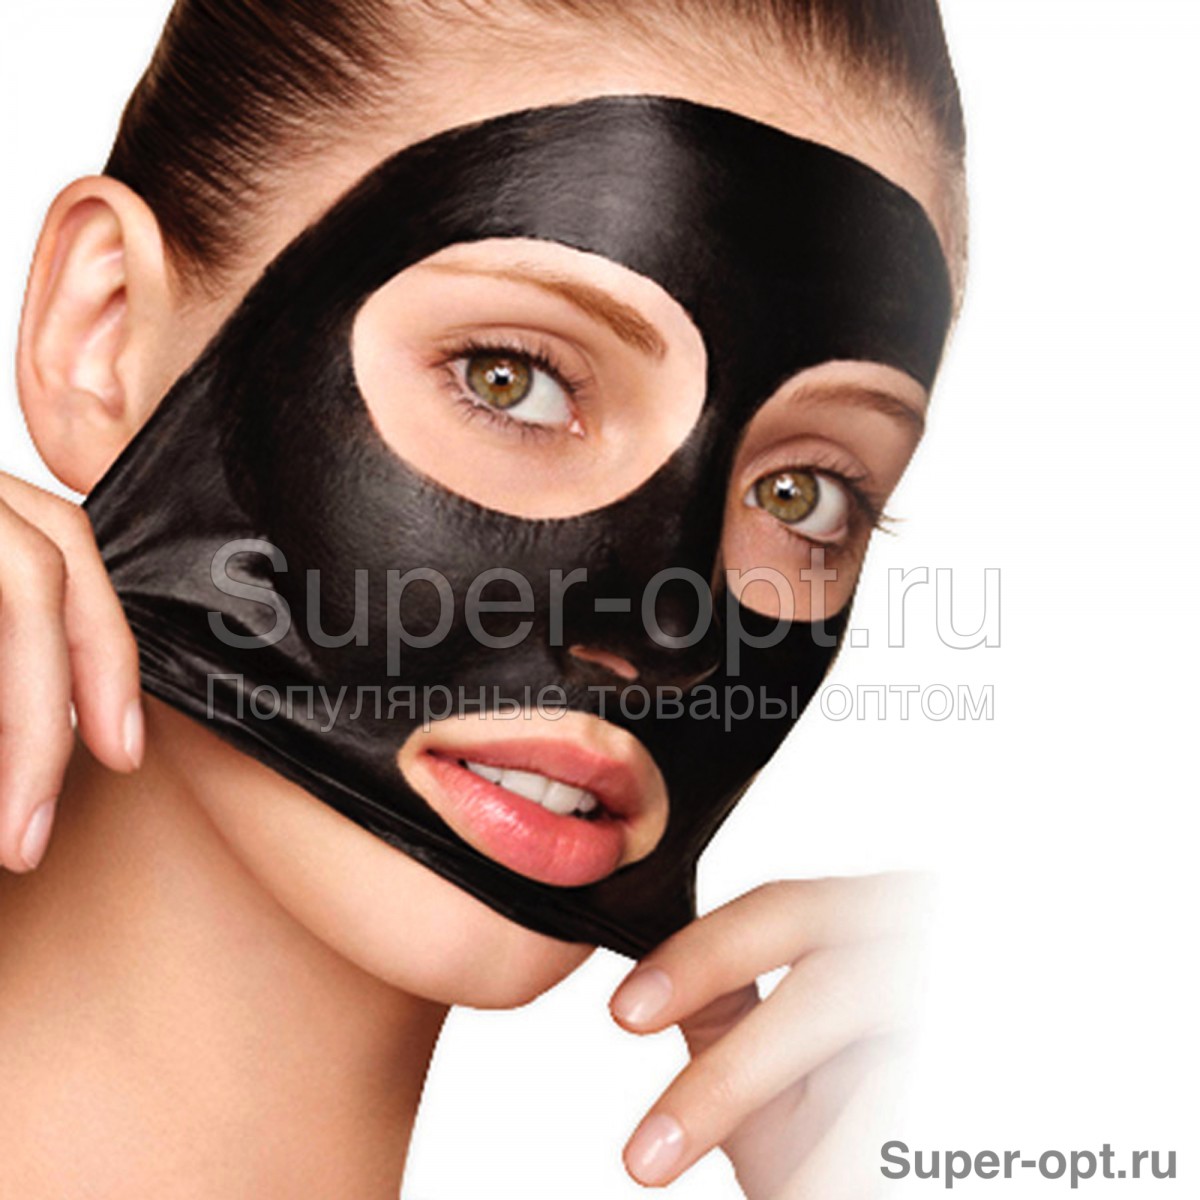 Очищающая маска для лица Black Mask Pilaten (150 гр)